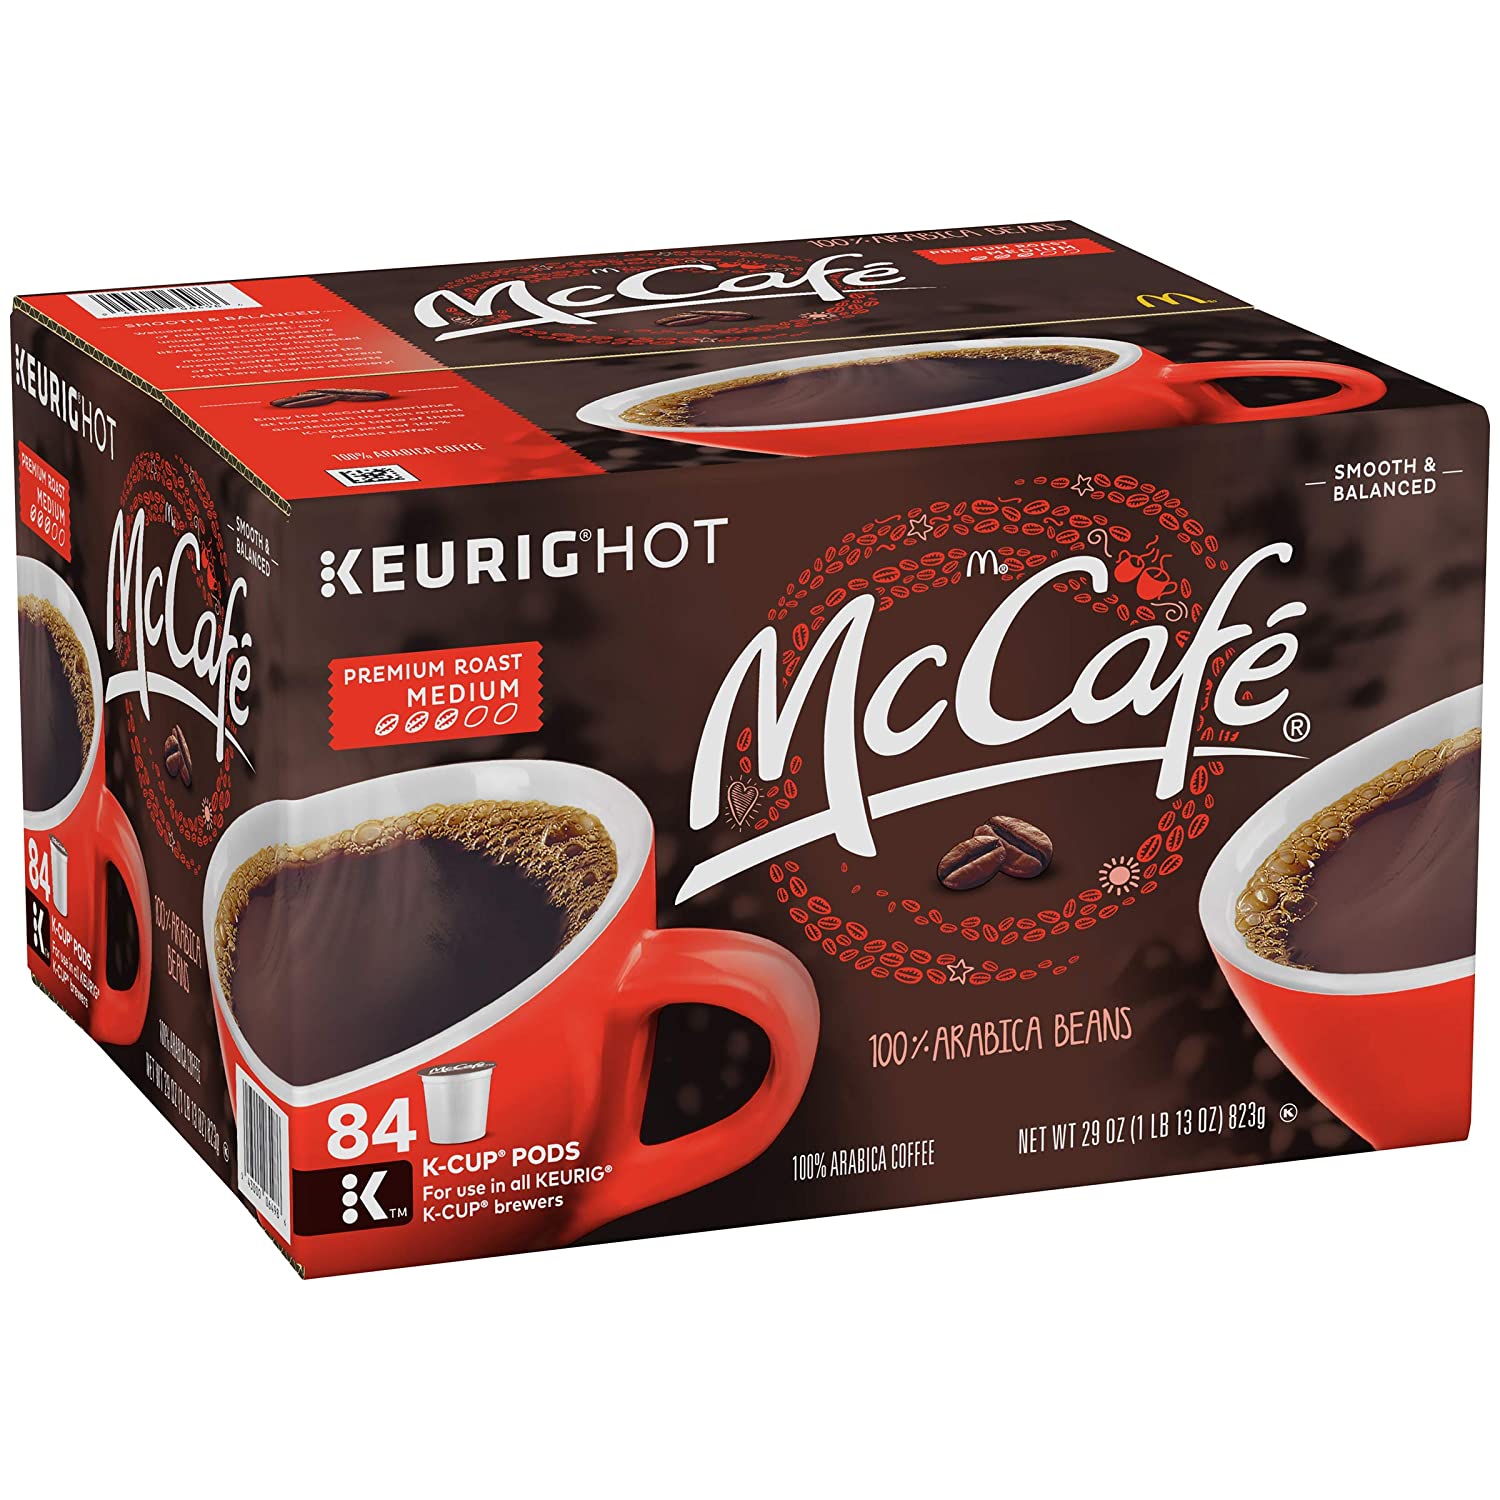 McCafe Premium Roast Keurig K Cup Coffee Pods, 84 Count (Pack of 1)